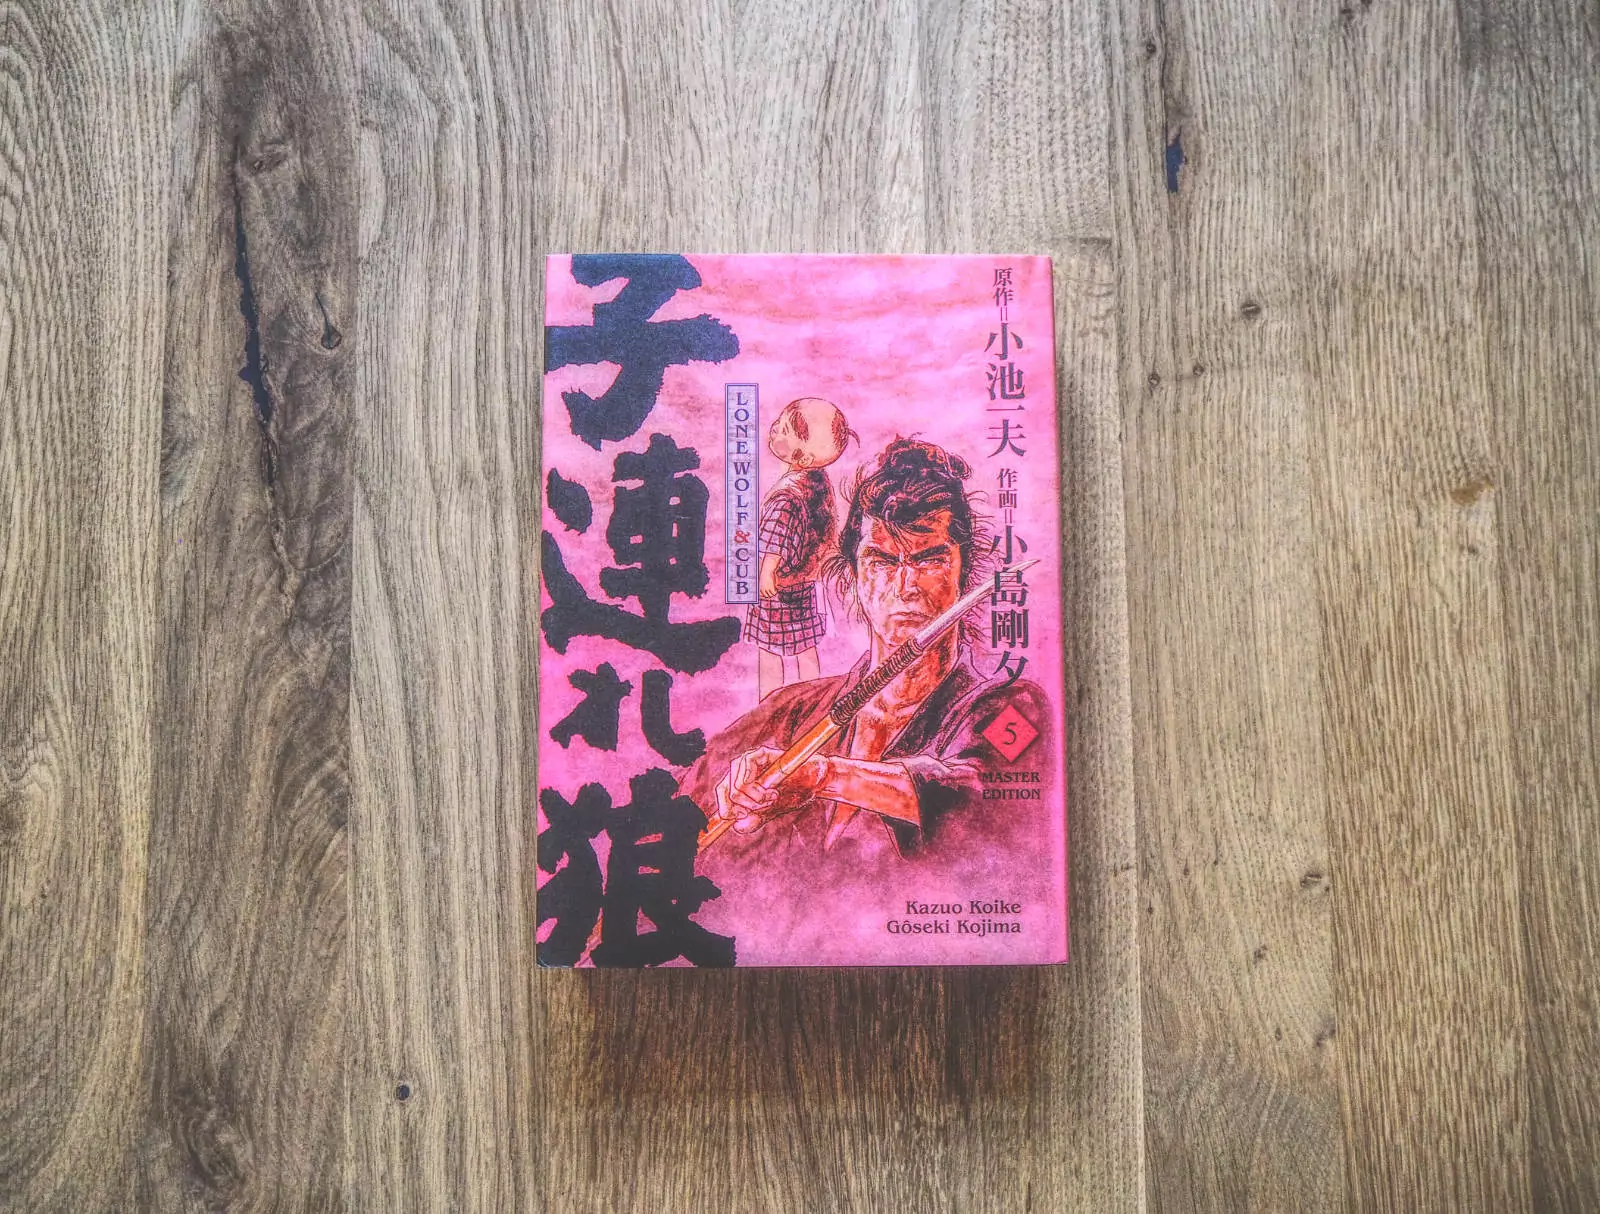 Ein japanisches Buch mit rosa Einband auf einem Holzboden.